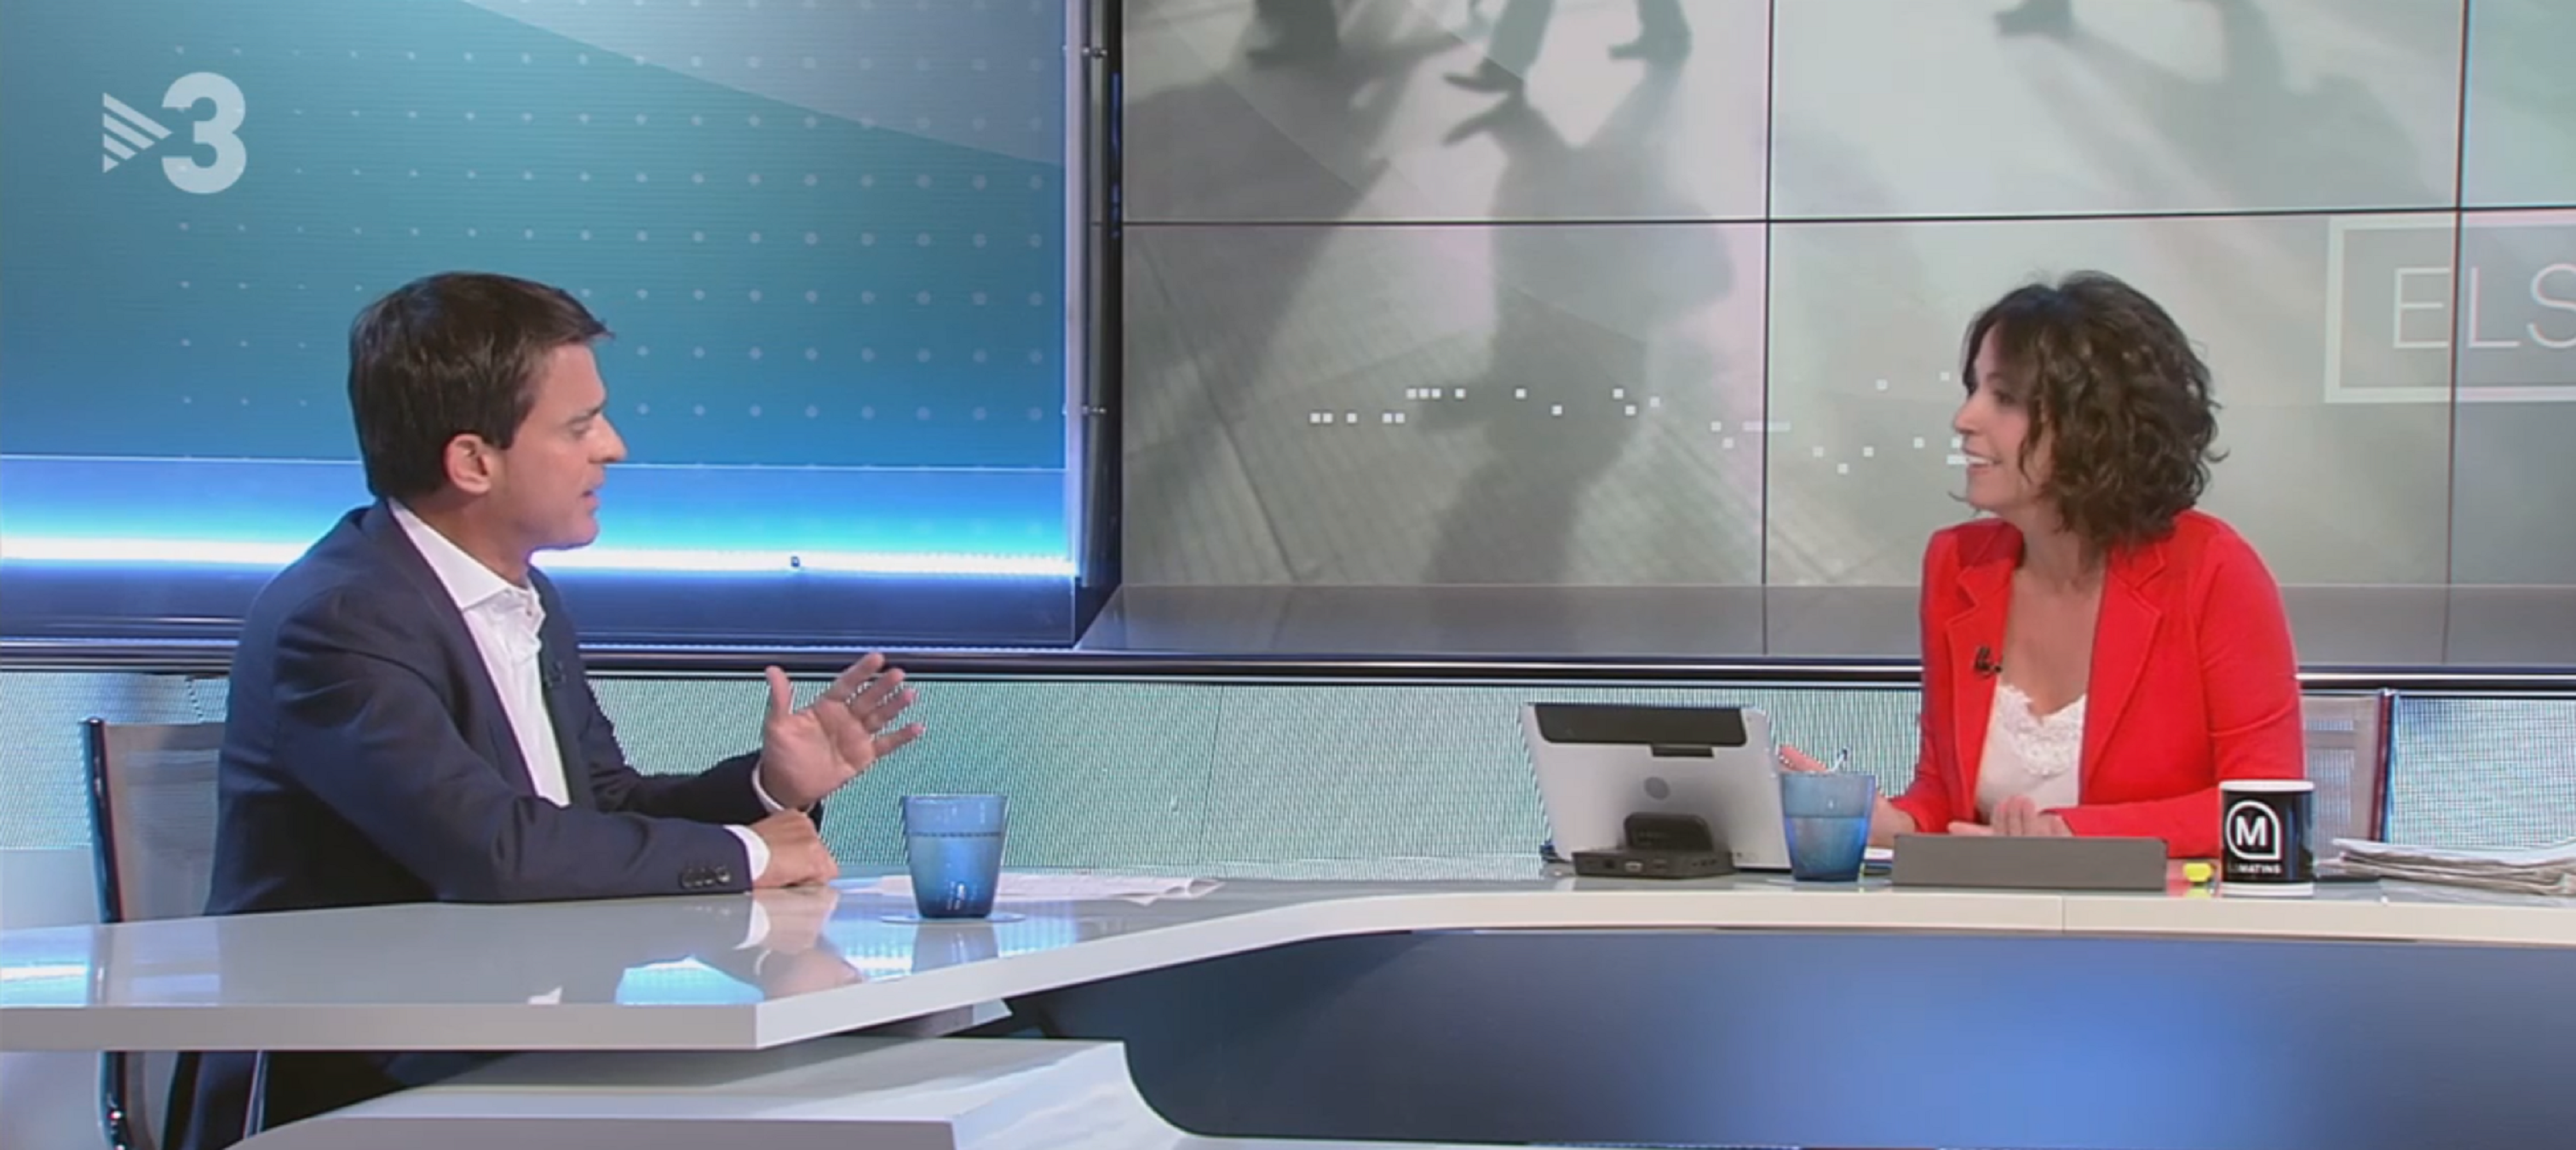 Manuel Valls se enfrenta a TV3: "¿Usted no ve violencia en Barcelona?"